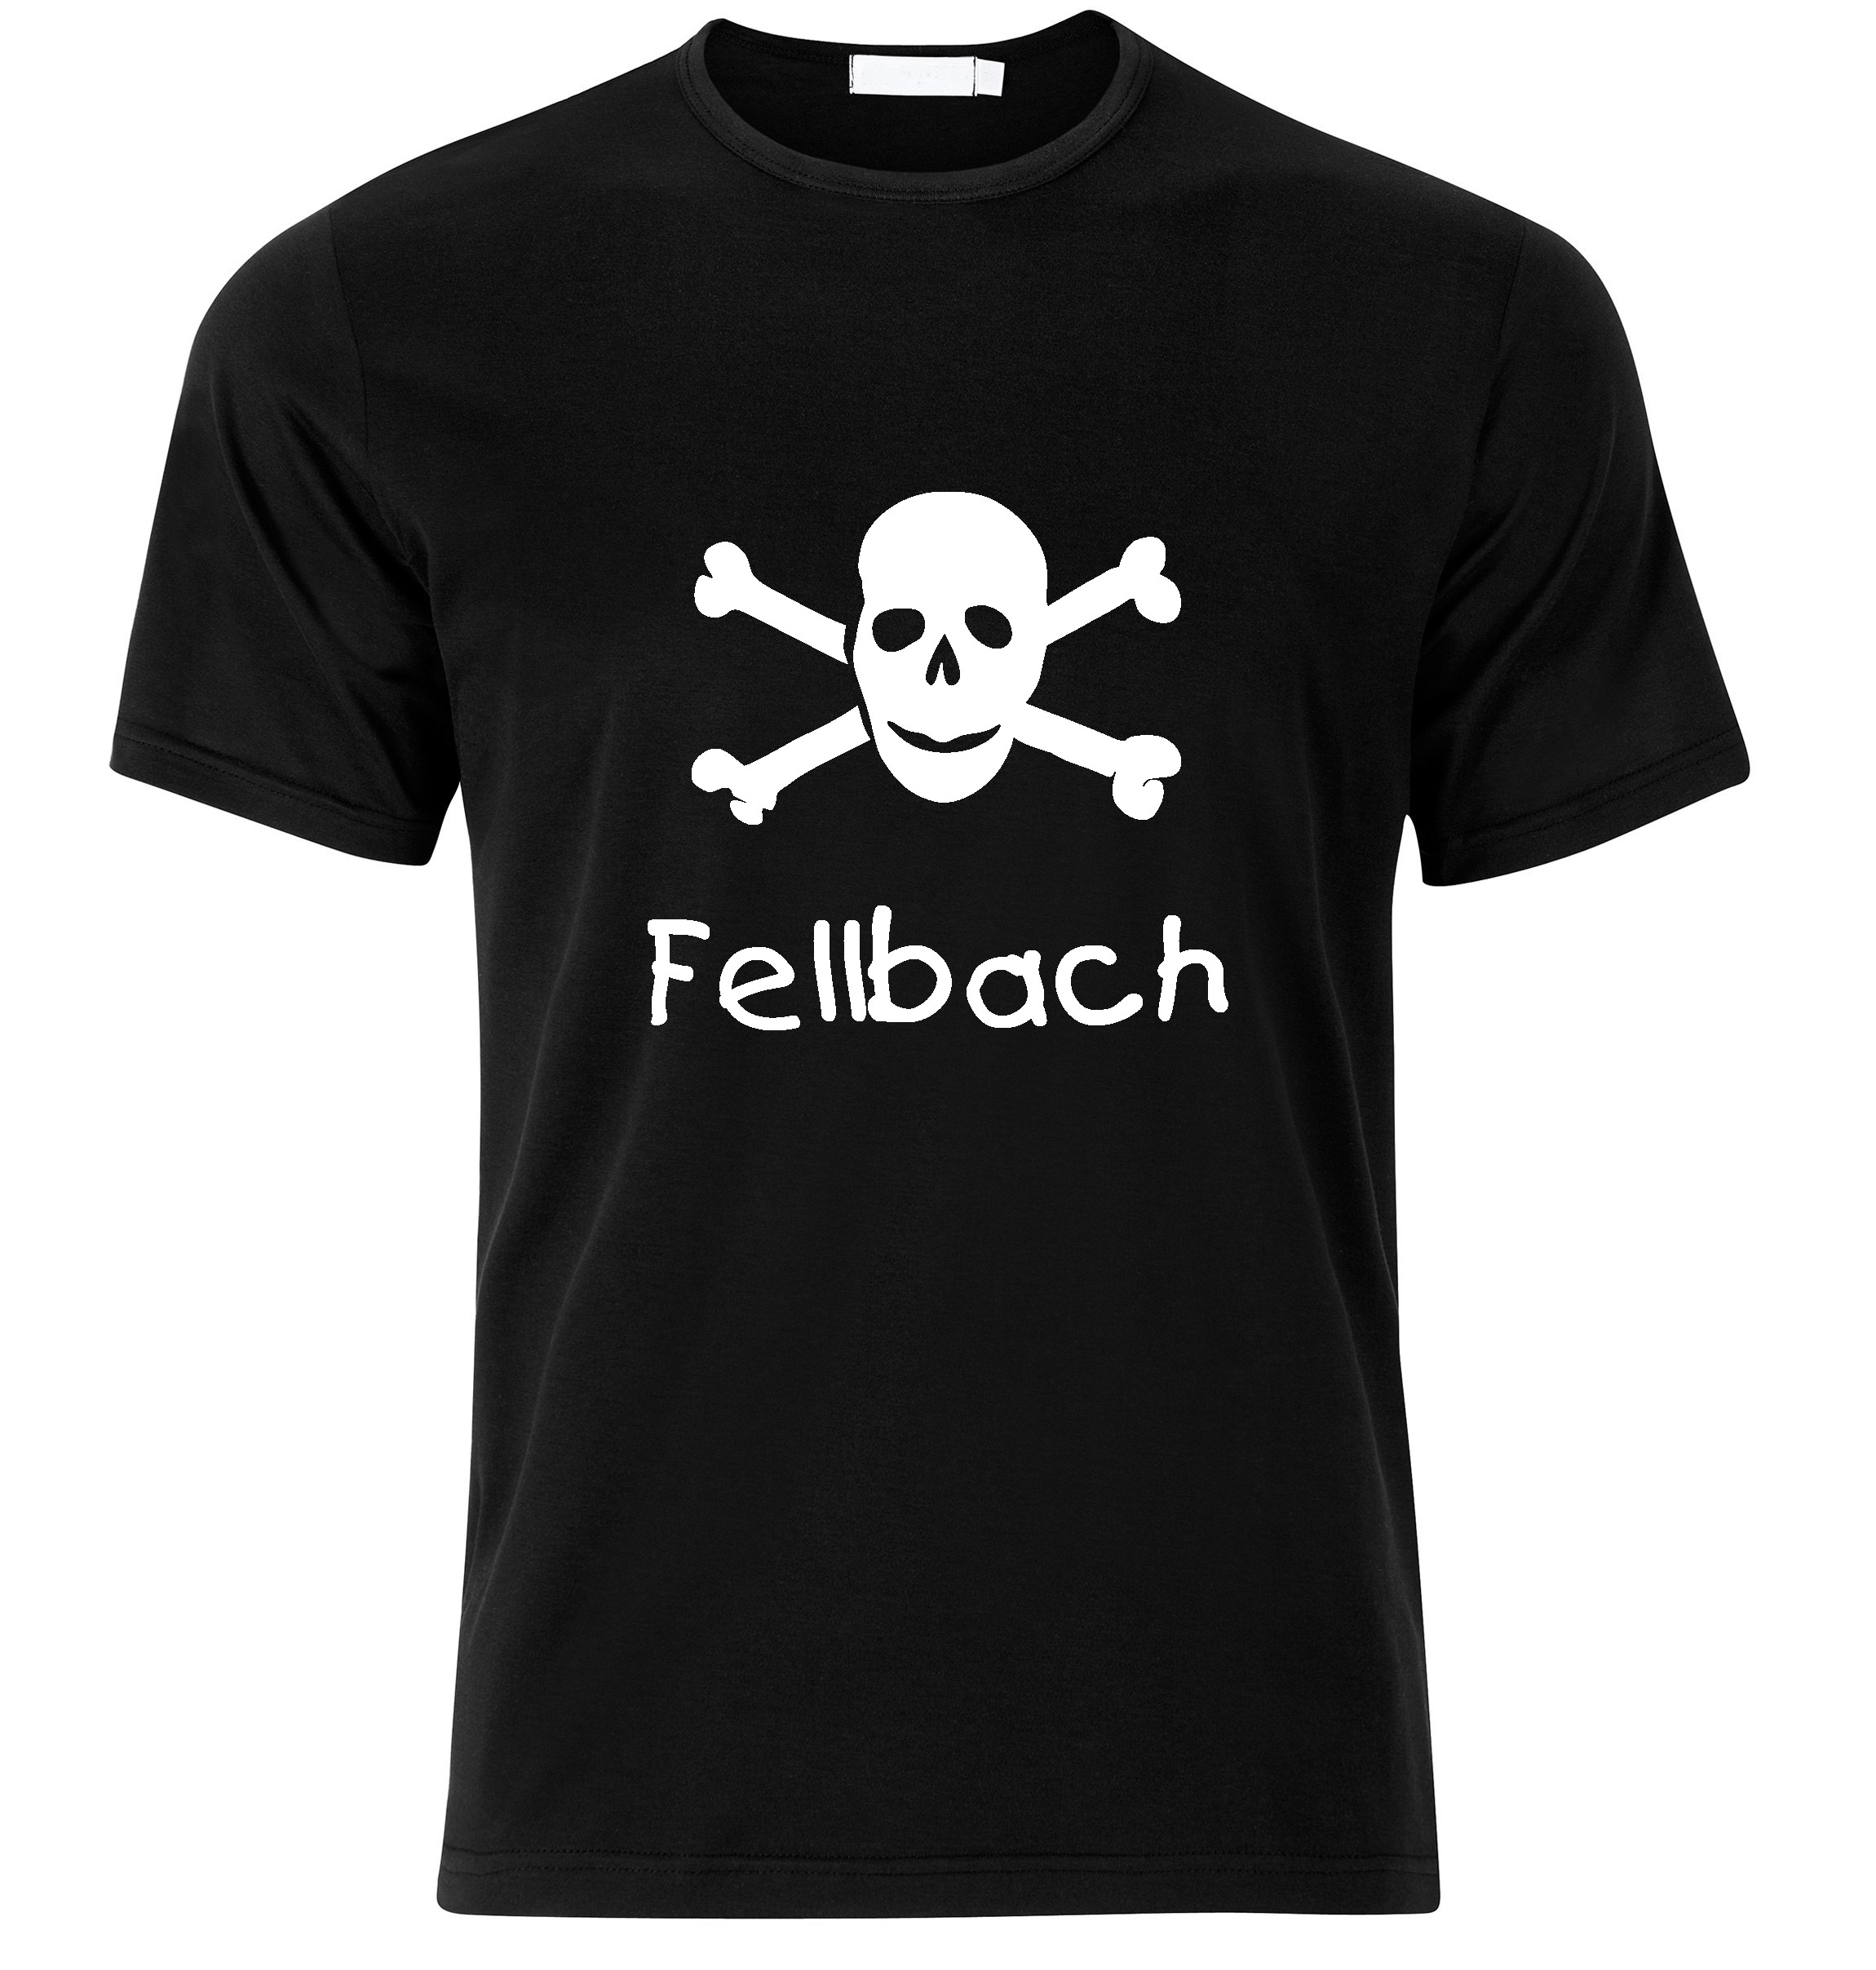 T-Shirt Fellbach Jolly Roger, Totenkopf